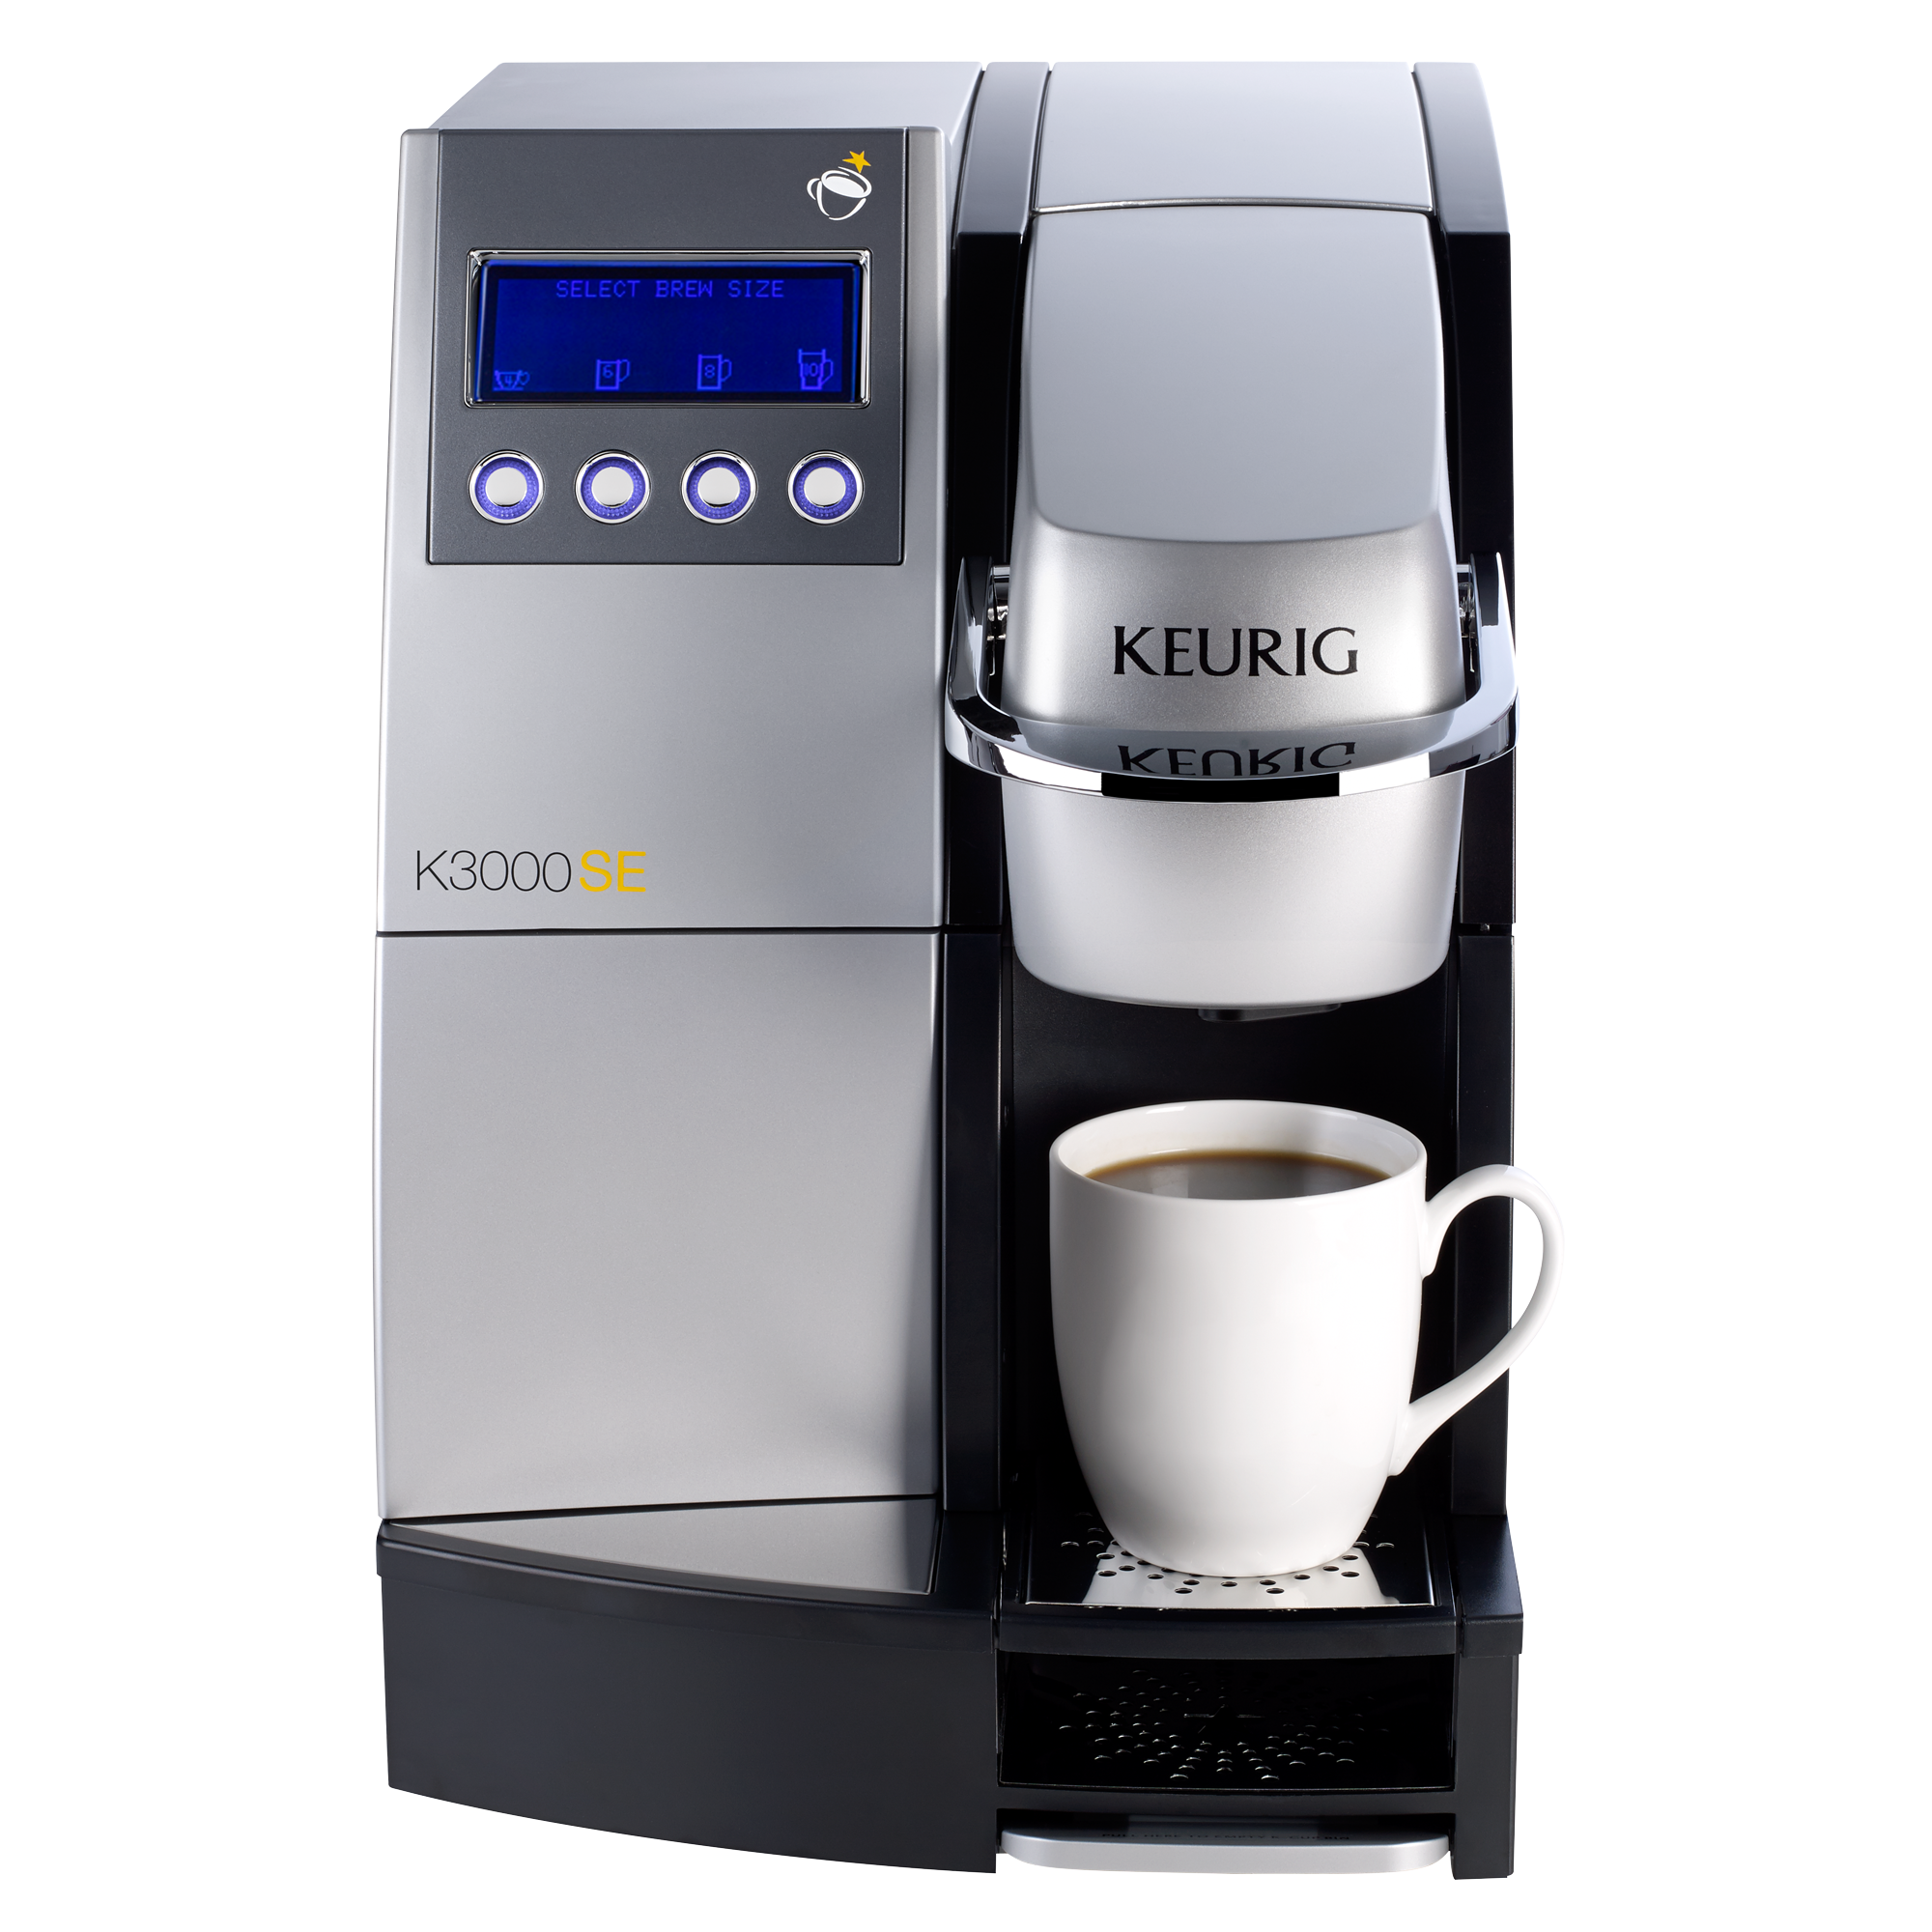 Commercial Coffee Machines: Keurig® K3000SE | Keurig®